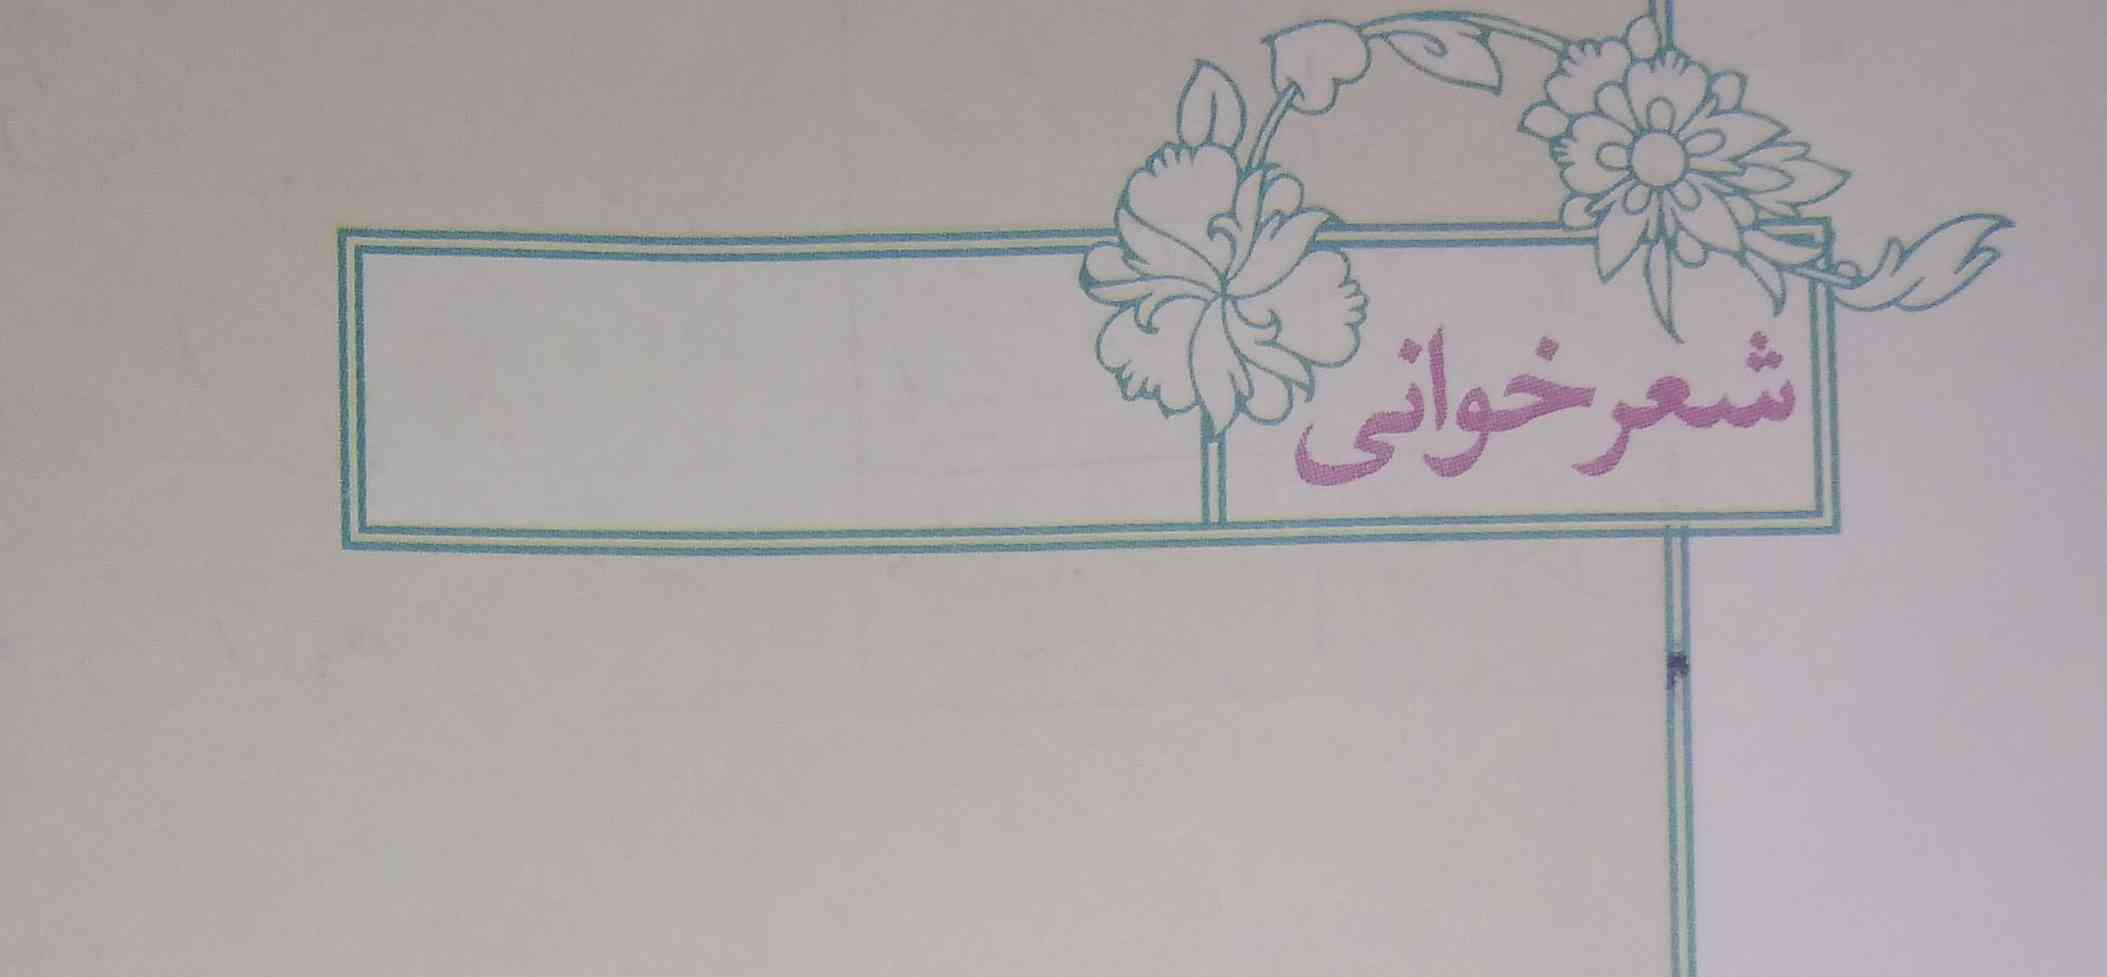 سلام بچه ها ی شعر برا درس 15 فارسی بدید 
تاج میدم فقط سریعععع♥️